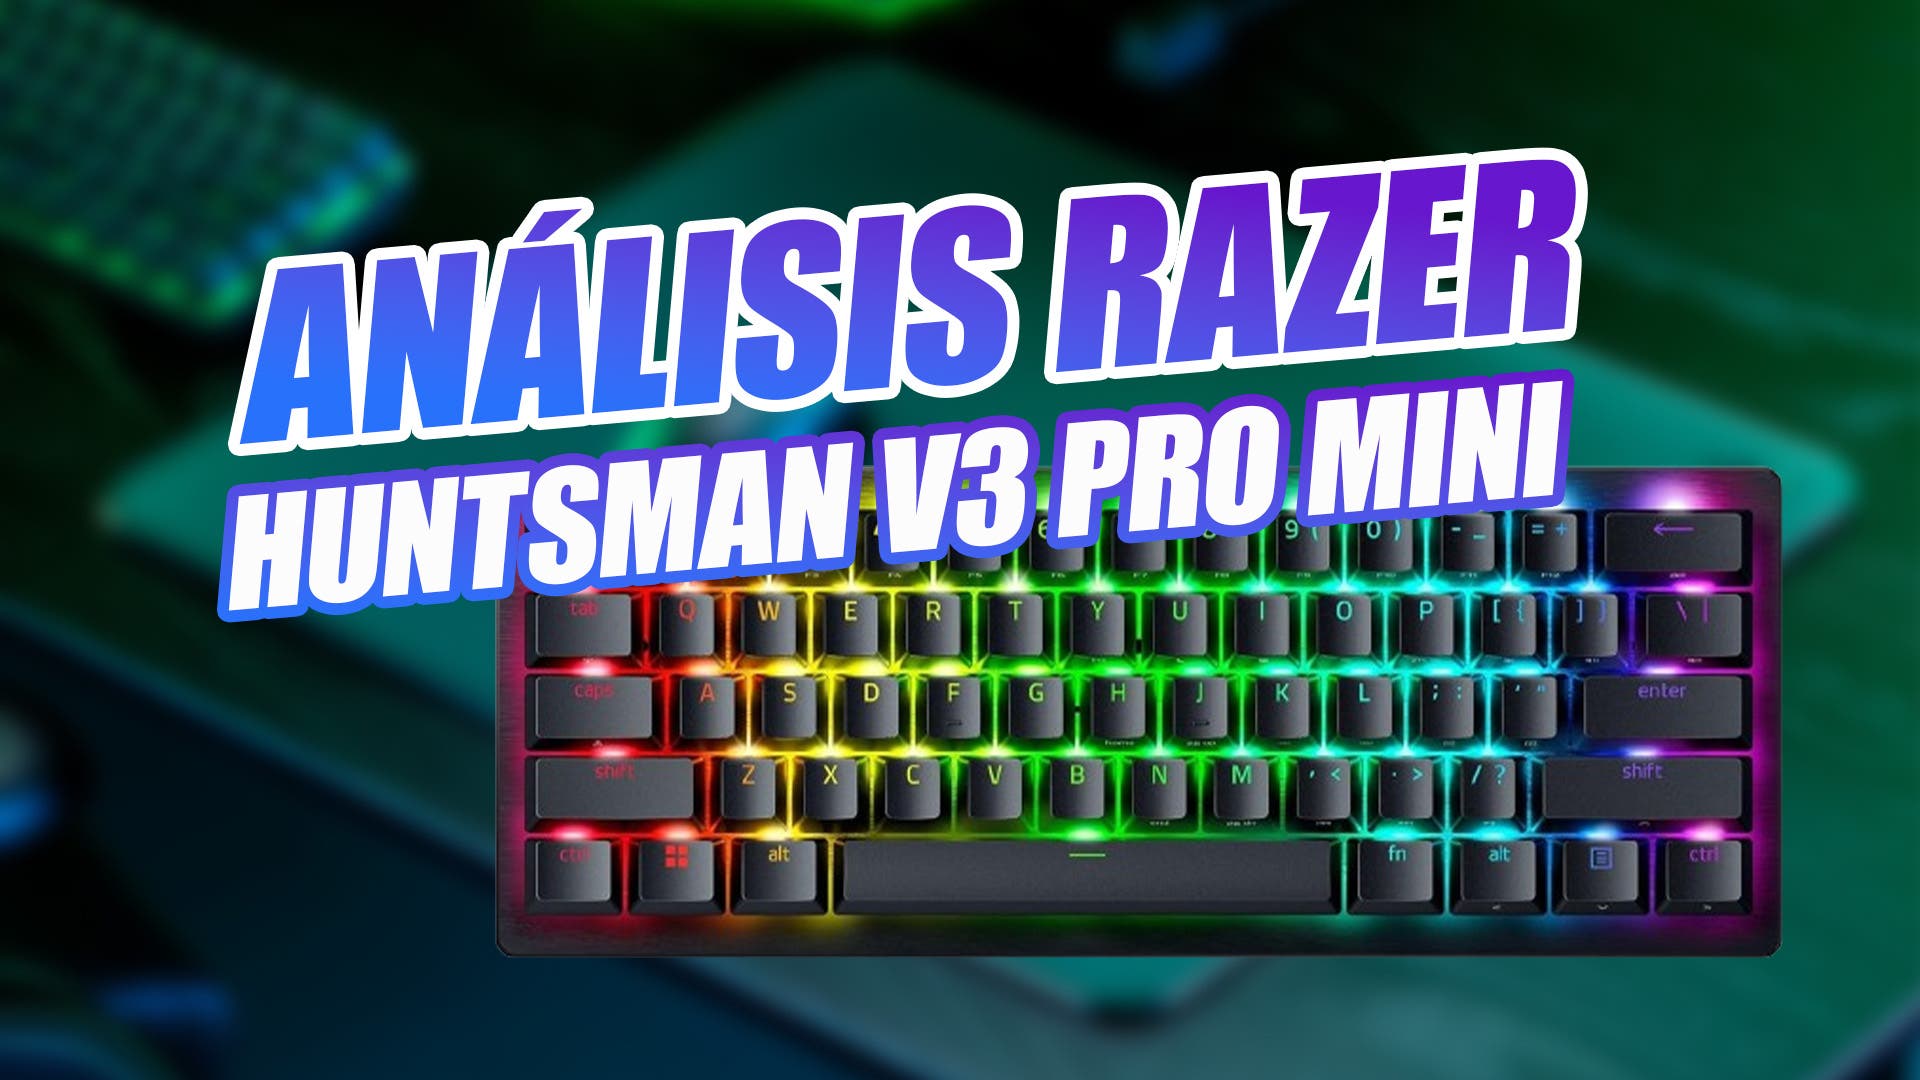 Un teclado gamer y minimalista: así es el Razer Huntsman Mini